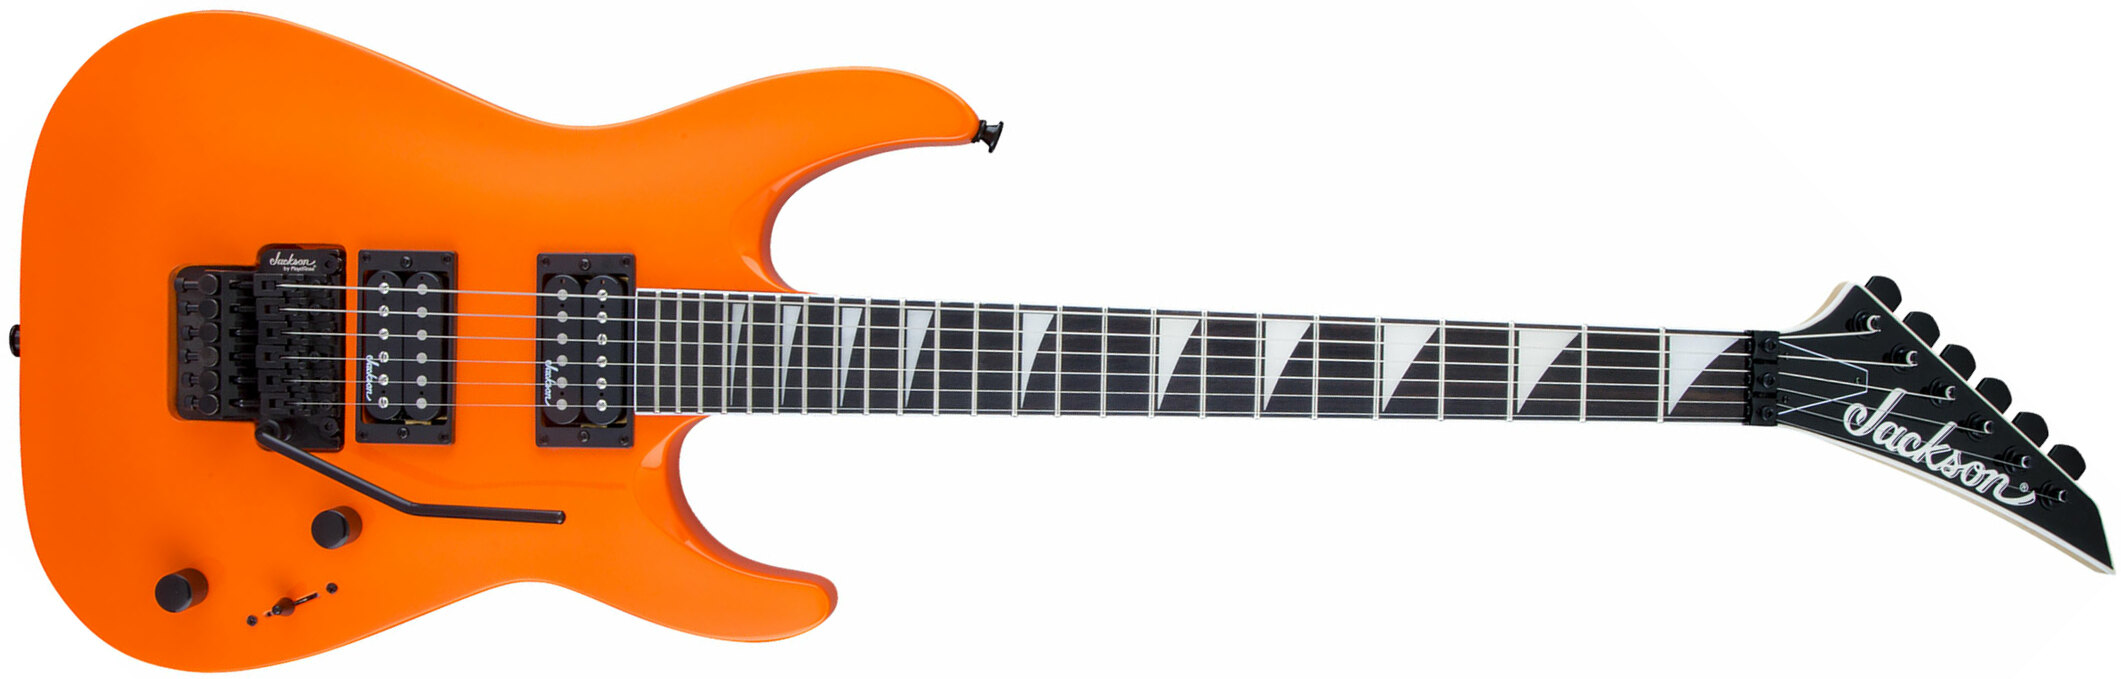 Jackson Dinky Archtop Js32 Dka 2h Fr Ama - Neon Orange - Guitarra eléctrica de doble corte - Main picture